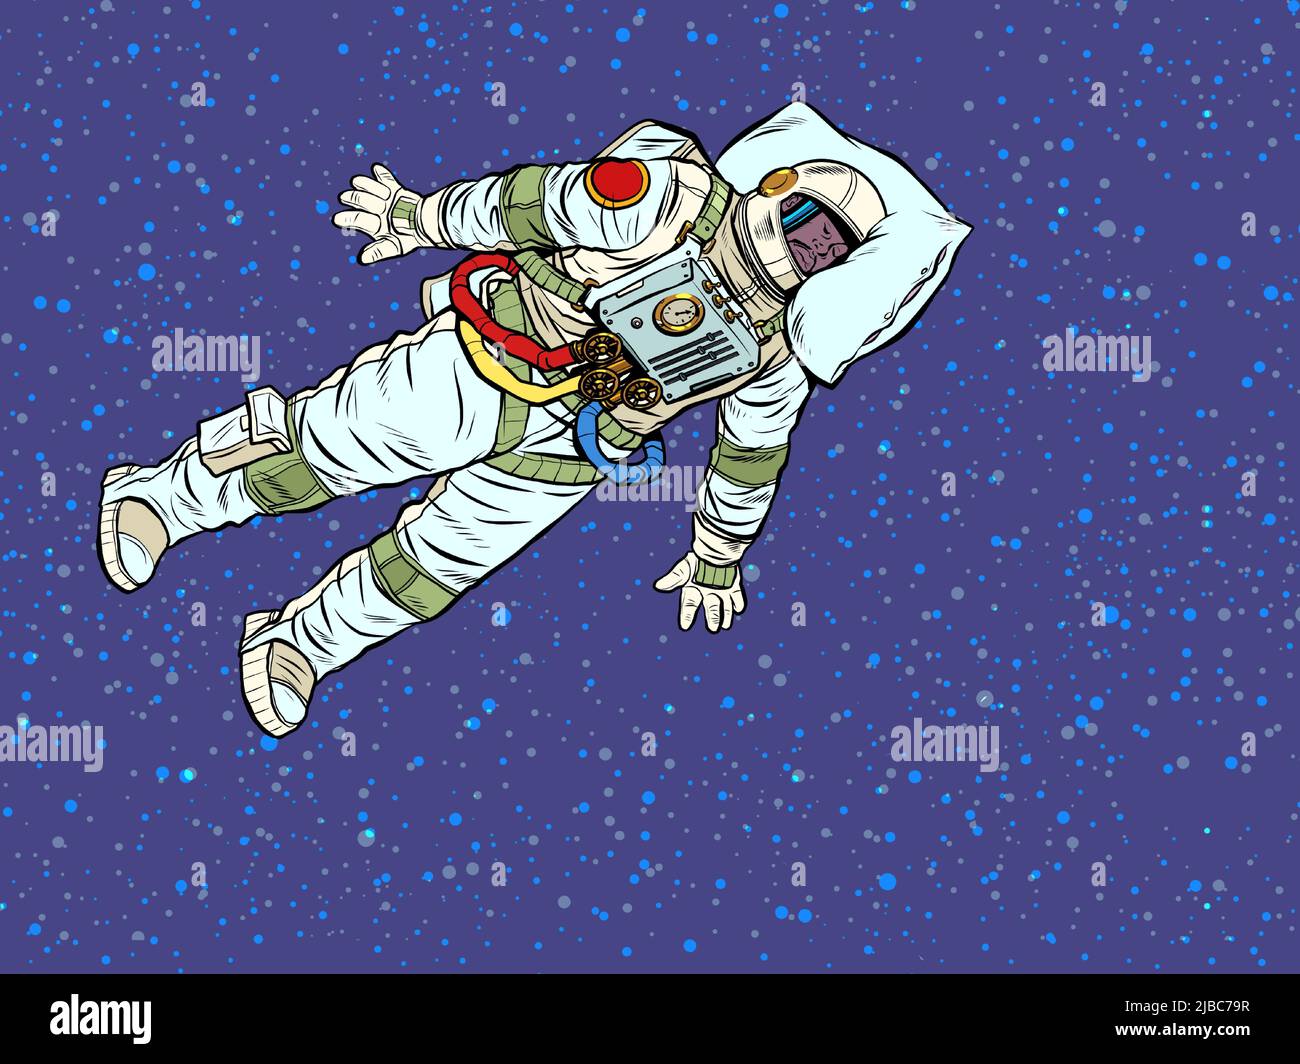 Un astronaute fatigué dort dans l'espace. Un professionnel dort au travail avec sa tête sur un oreiller. Pop Art Retro Vector Illustration 50s 60s Vintage ki Illustration de Vecteur